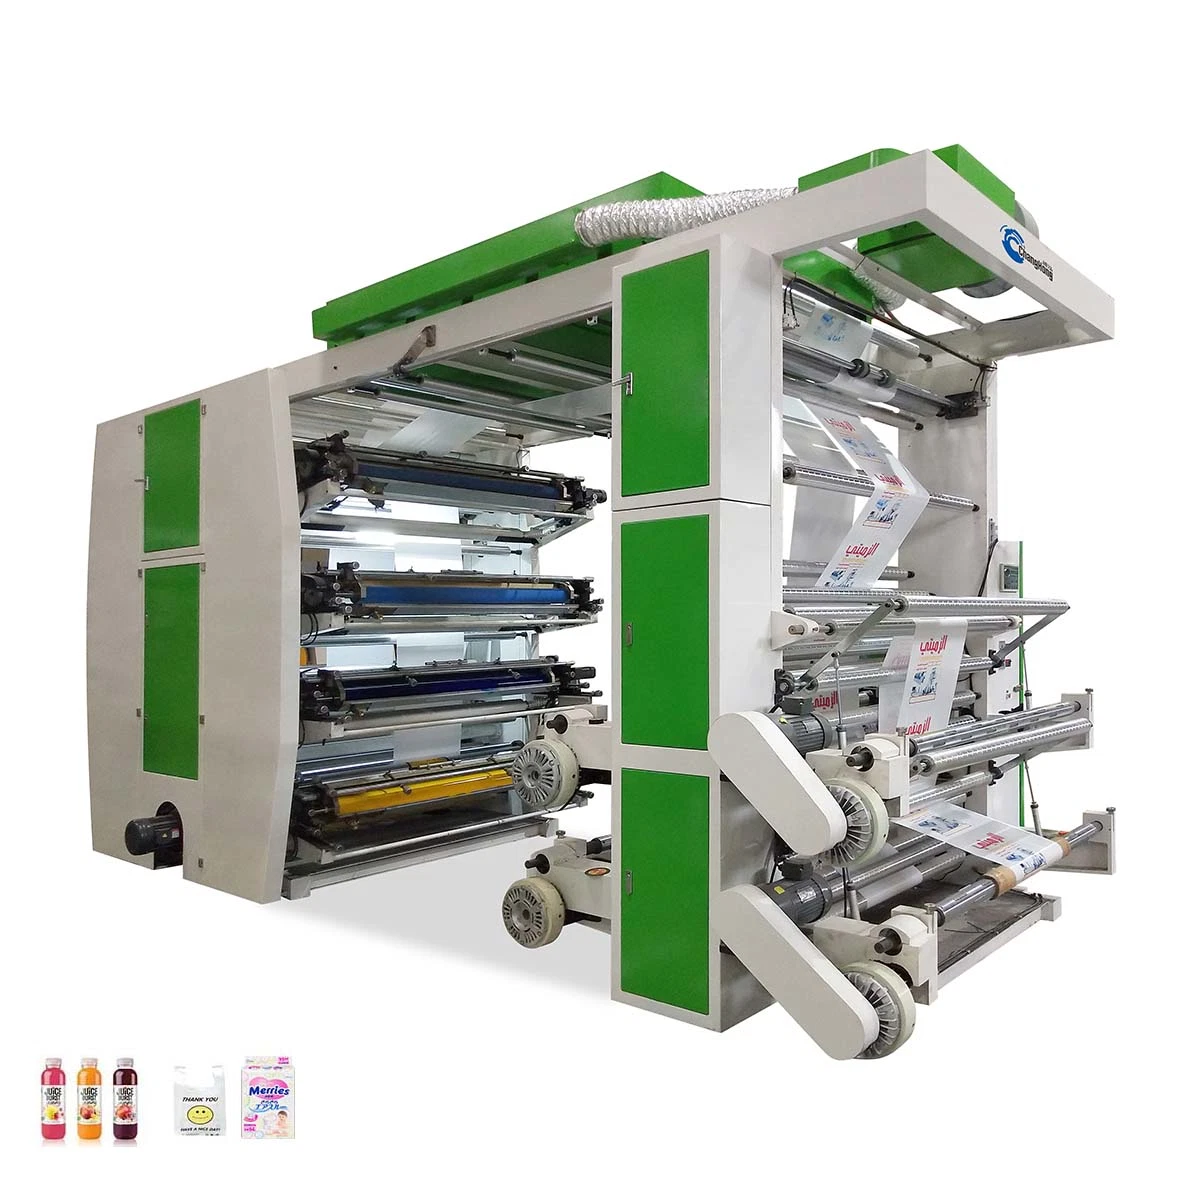 8 ماكينة طباعة مرنة من نوع حقيبة بلاستيكية من نوع مجموعة ألوان للبيع